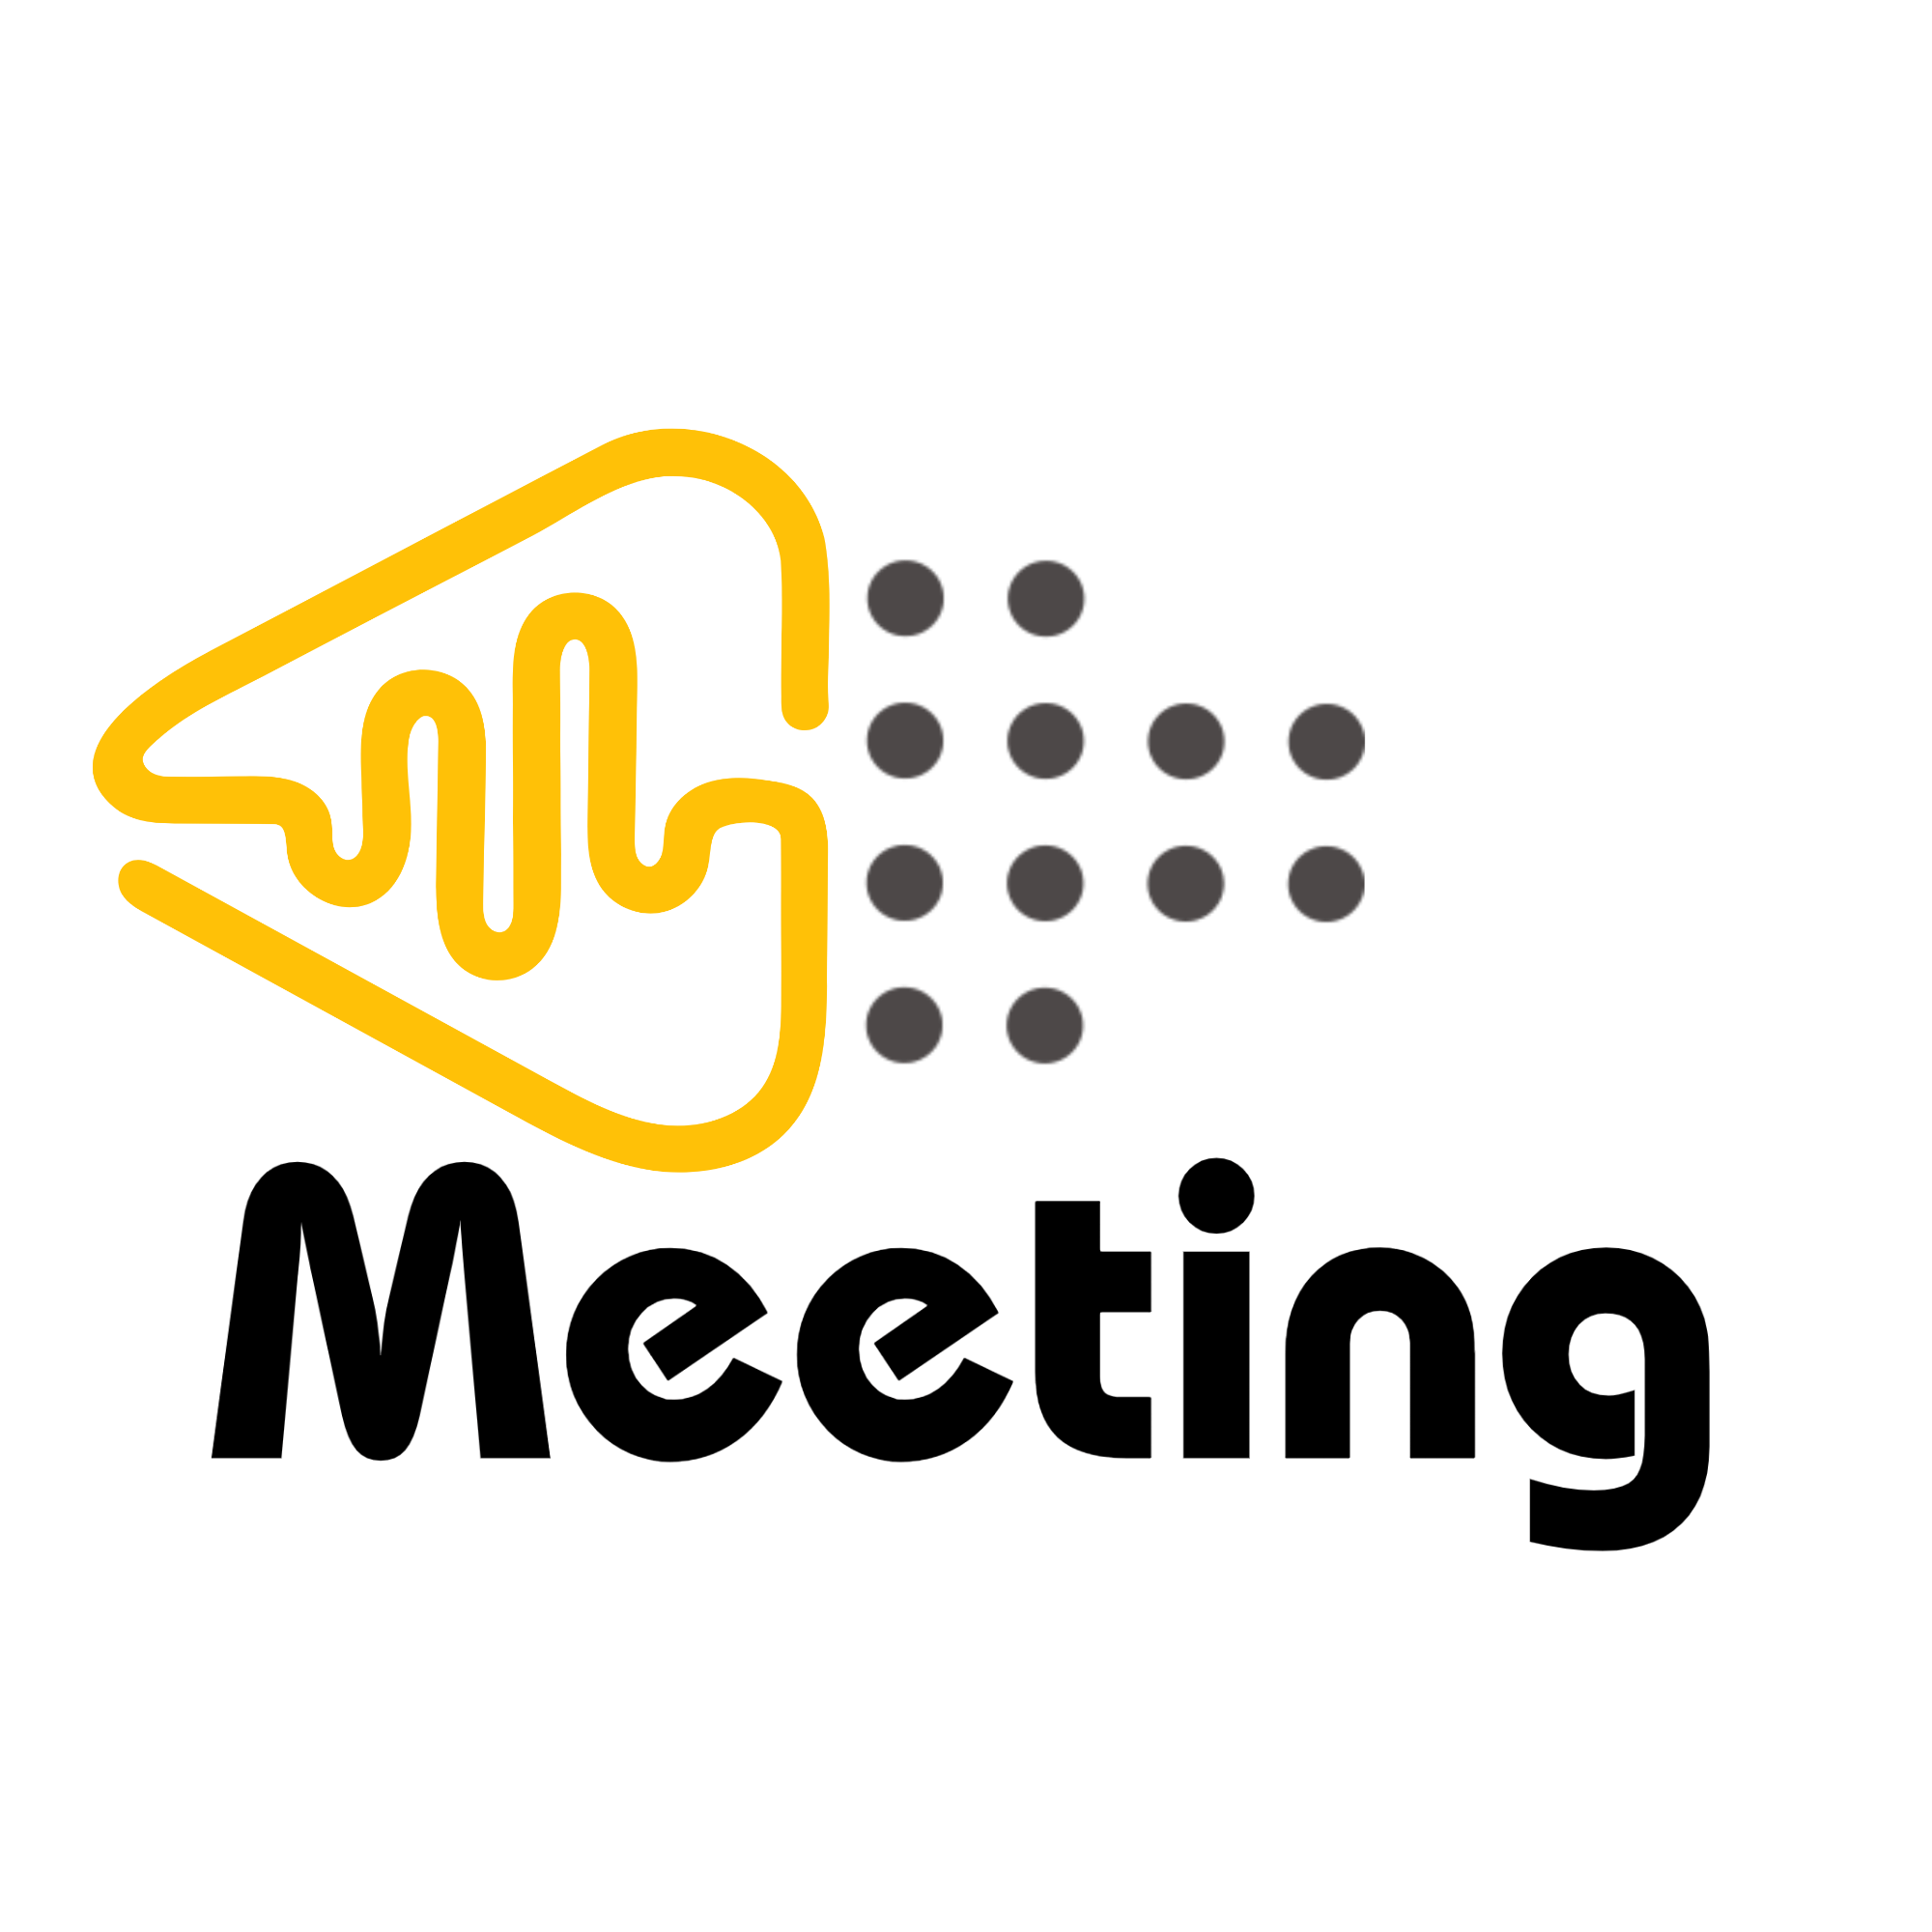 Meeting